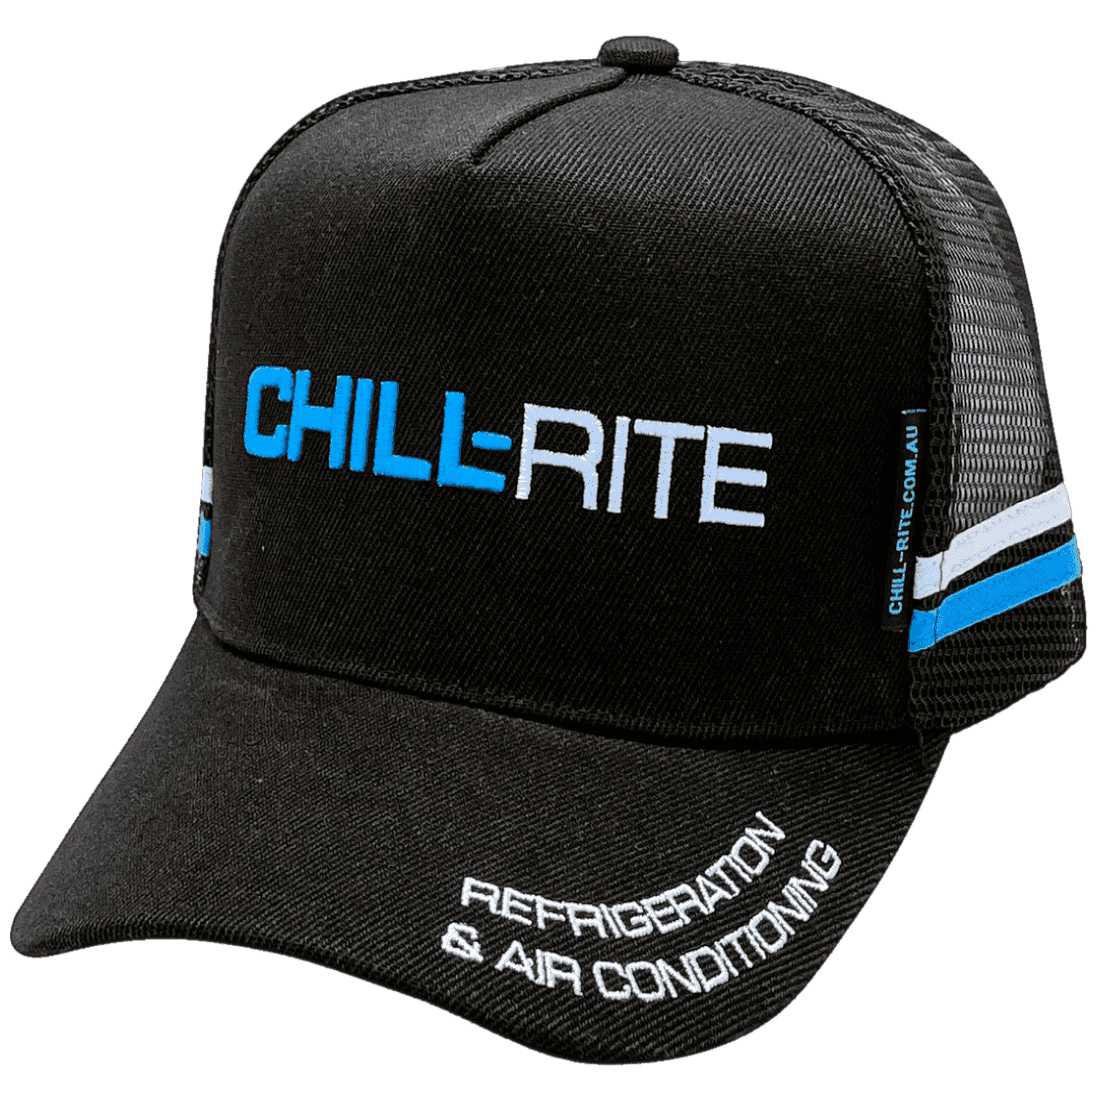 Chill-Rite Refrigeration & Air Conditioning HP Midrange Aussie Trucker Hat Acrylic -Black